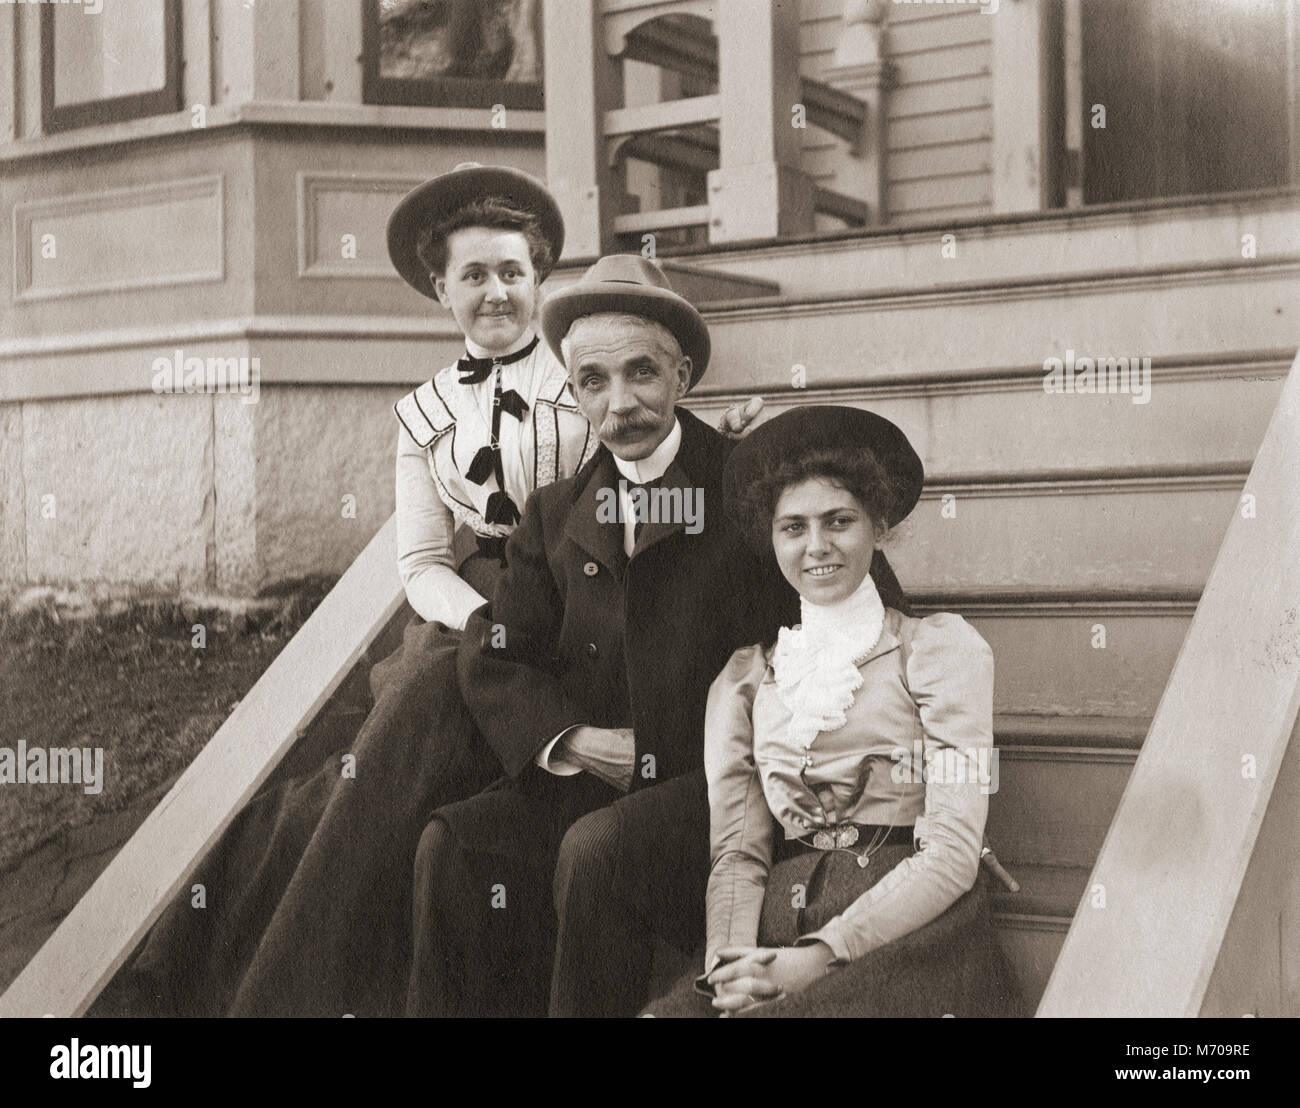 Antike ca. 1905 Foto, Vater und zwei erwachsenen Töchtern auf der Treppe ihres Hauses sitzen. Lage unbekannt, wahrscheinlich New England, USA. Ich habe weitere Fotos von dieser Familie in Riggsville, Maine, USA. Stockfoto